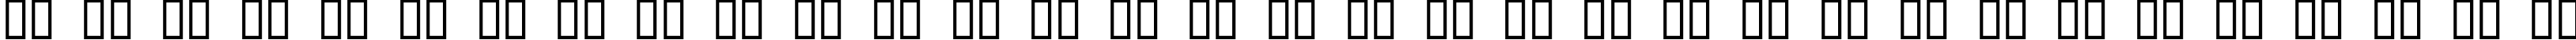 Пример написания русского алфавита шрифтом kroeger 04_66